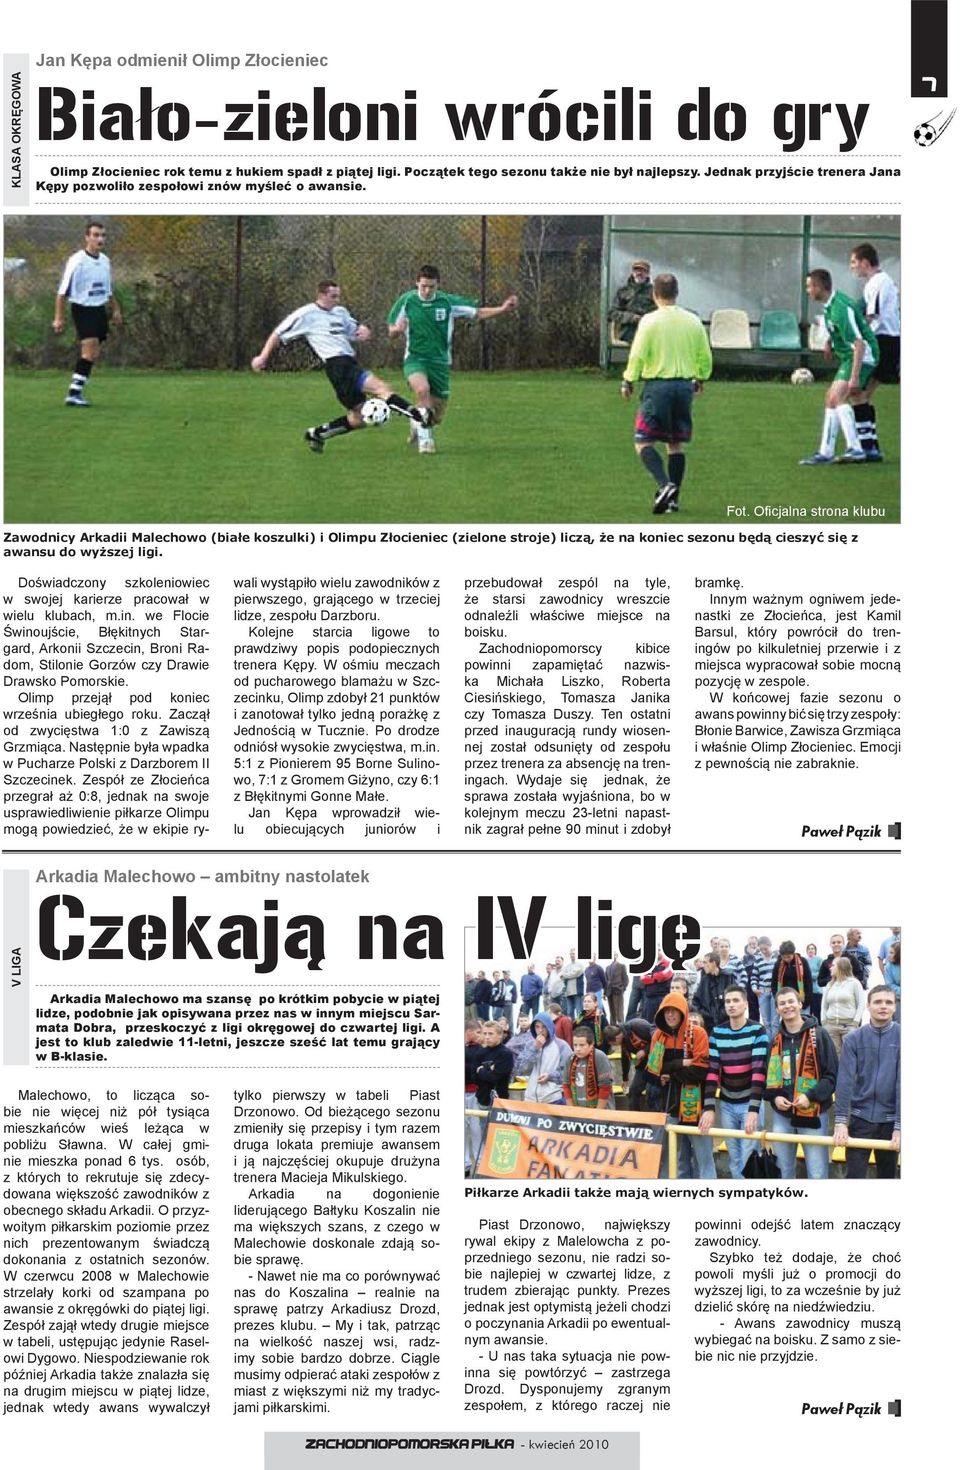 Ofi cjalna strona klubu Zawodnicy Arkadii Malechowo (białe koszulki) i Olimpu Złocieniec (zielone stroje) liczą, że na koniec sezonu będą cieszyć się z awansu do wyższej ligi.